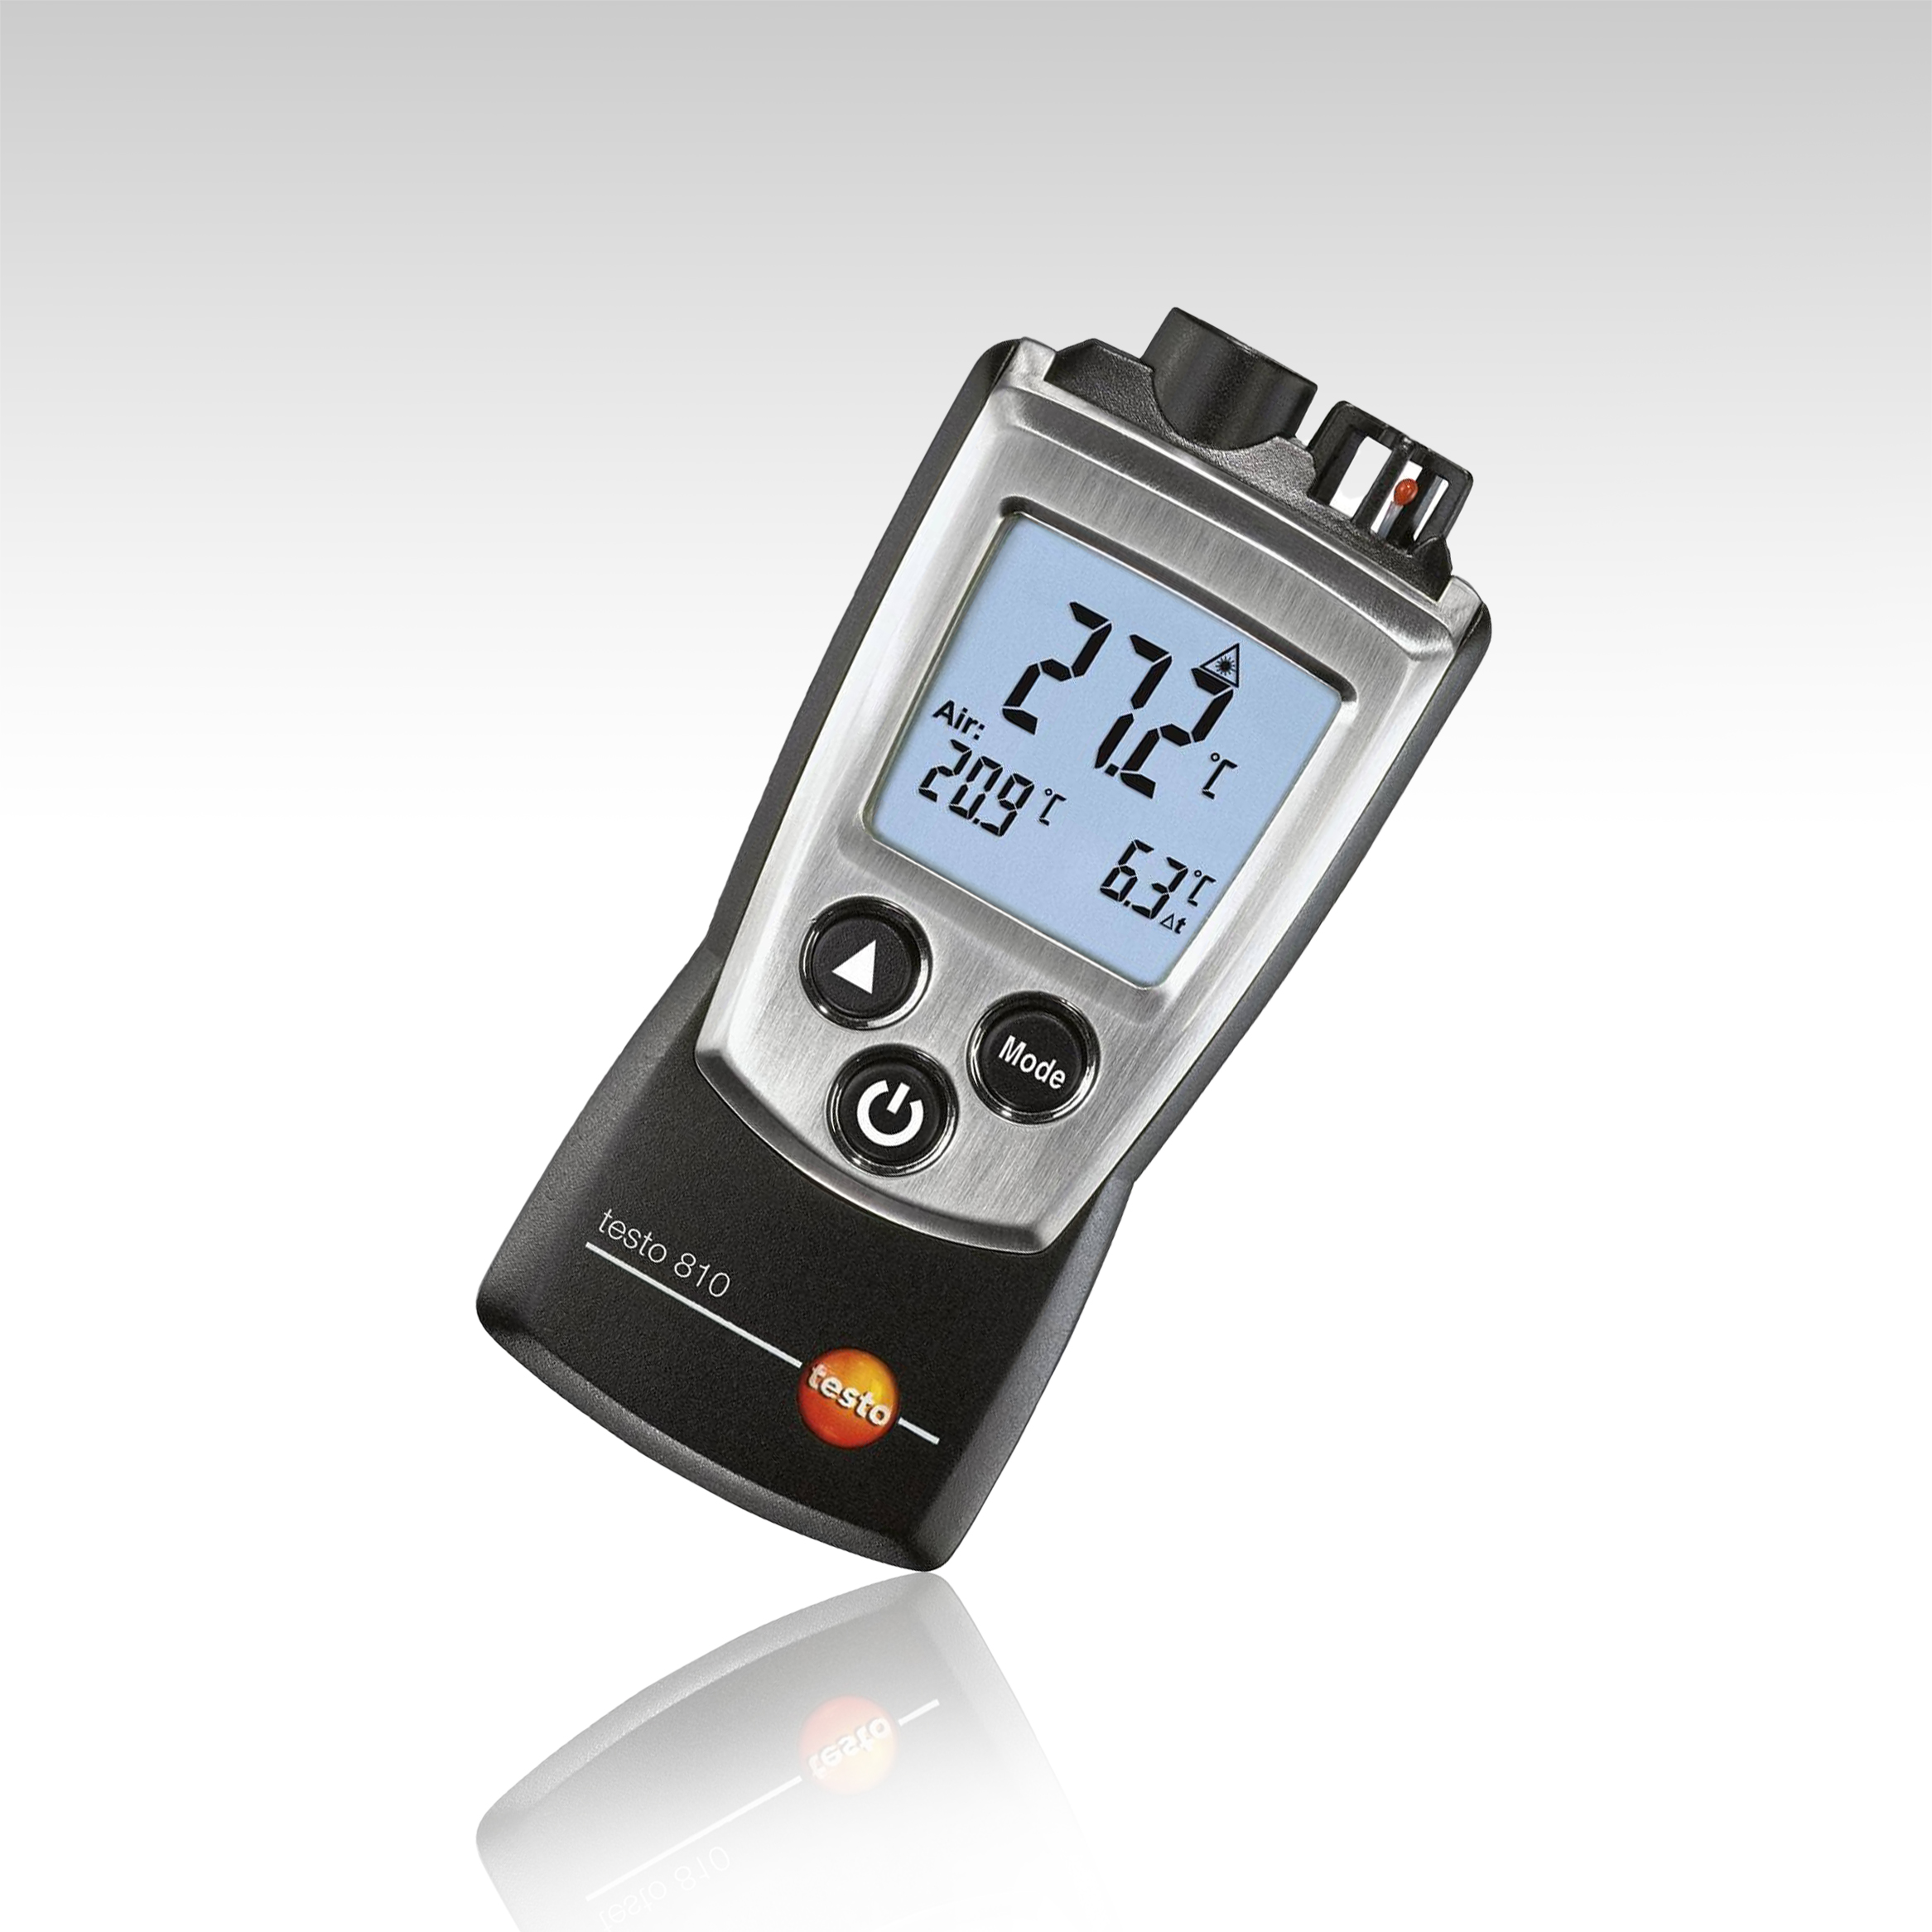 Infrarot-Thermometer testo 810